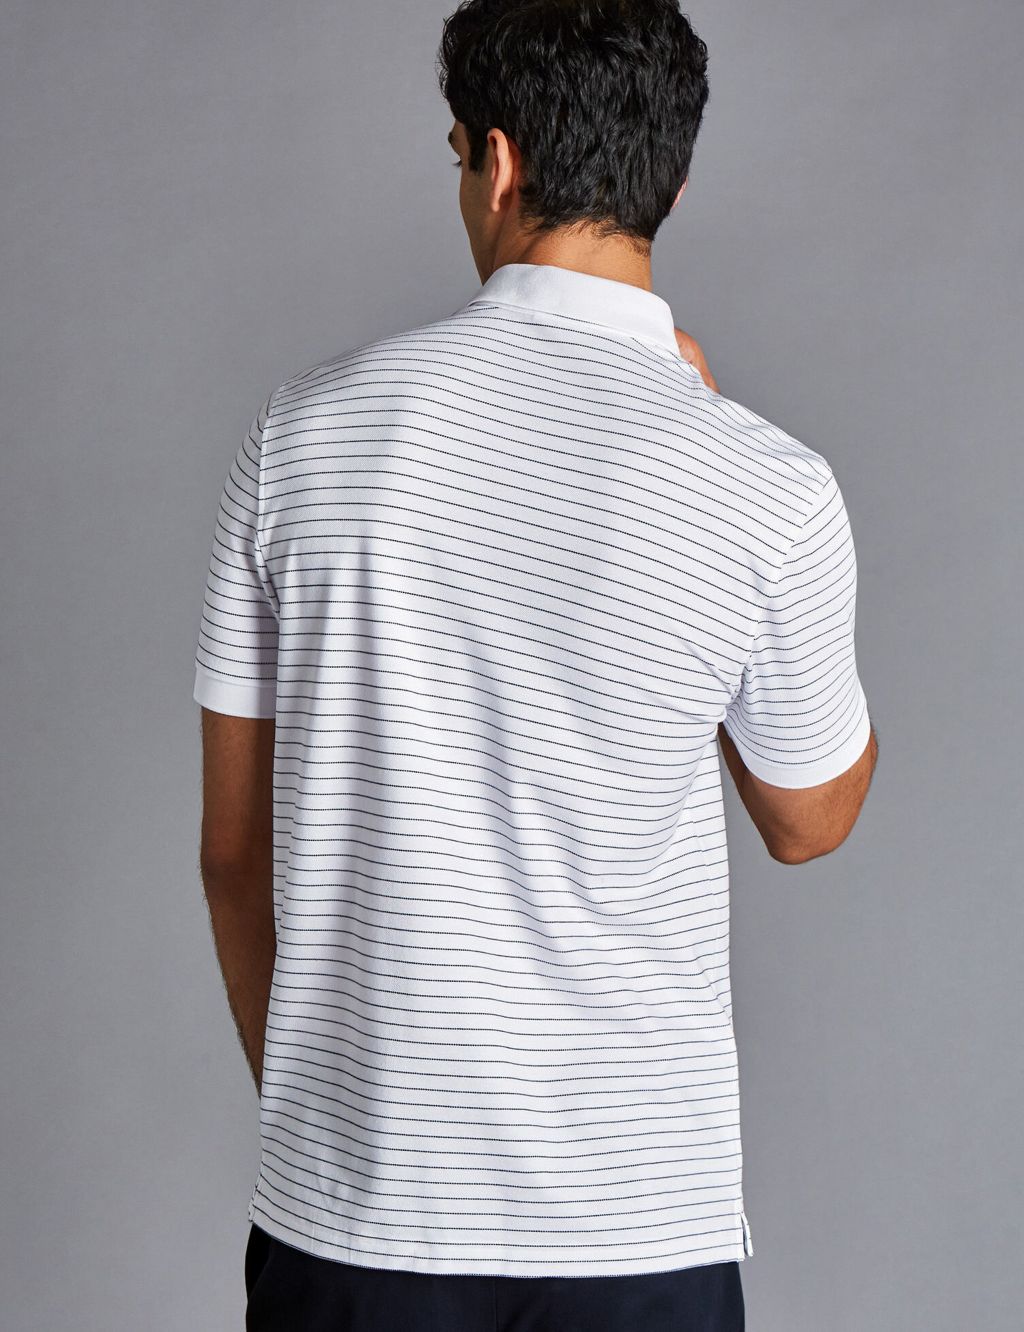 Cotton Rich Striped Pique Polo Shirt 4 of 6